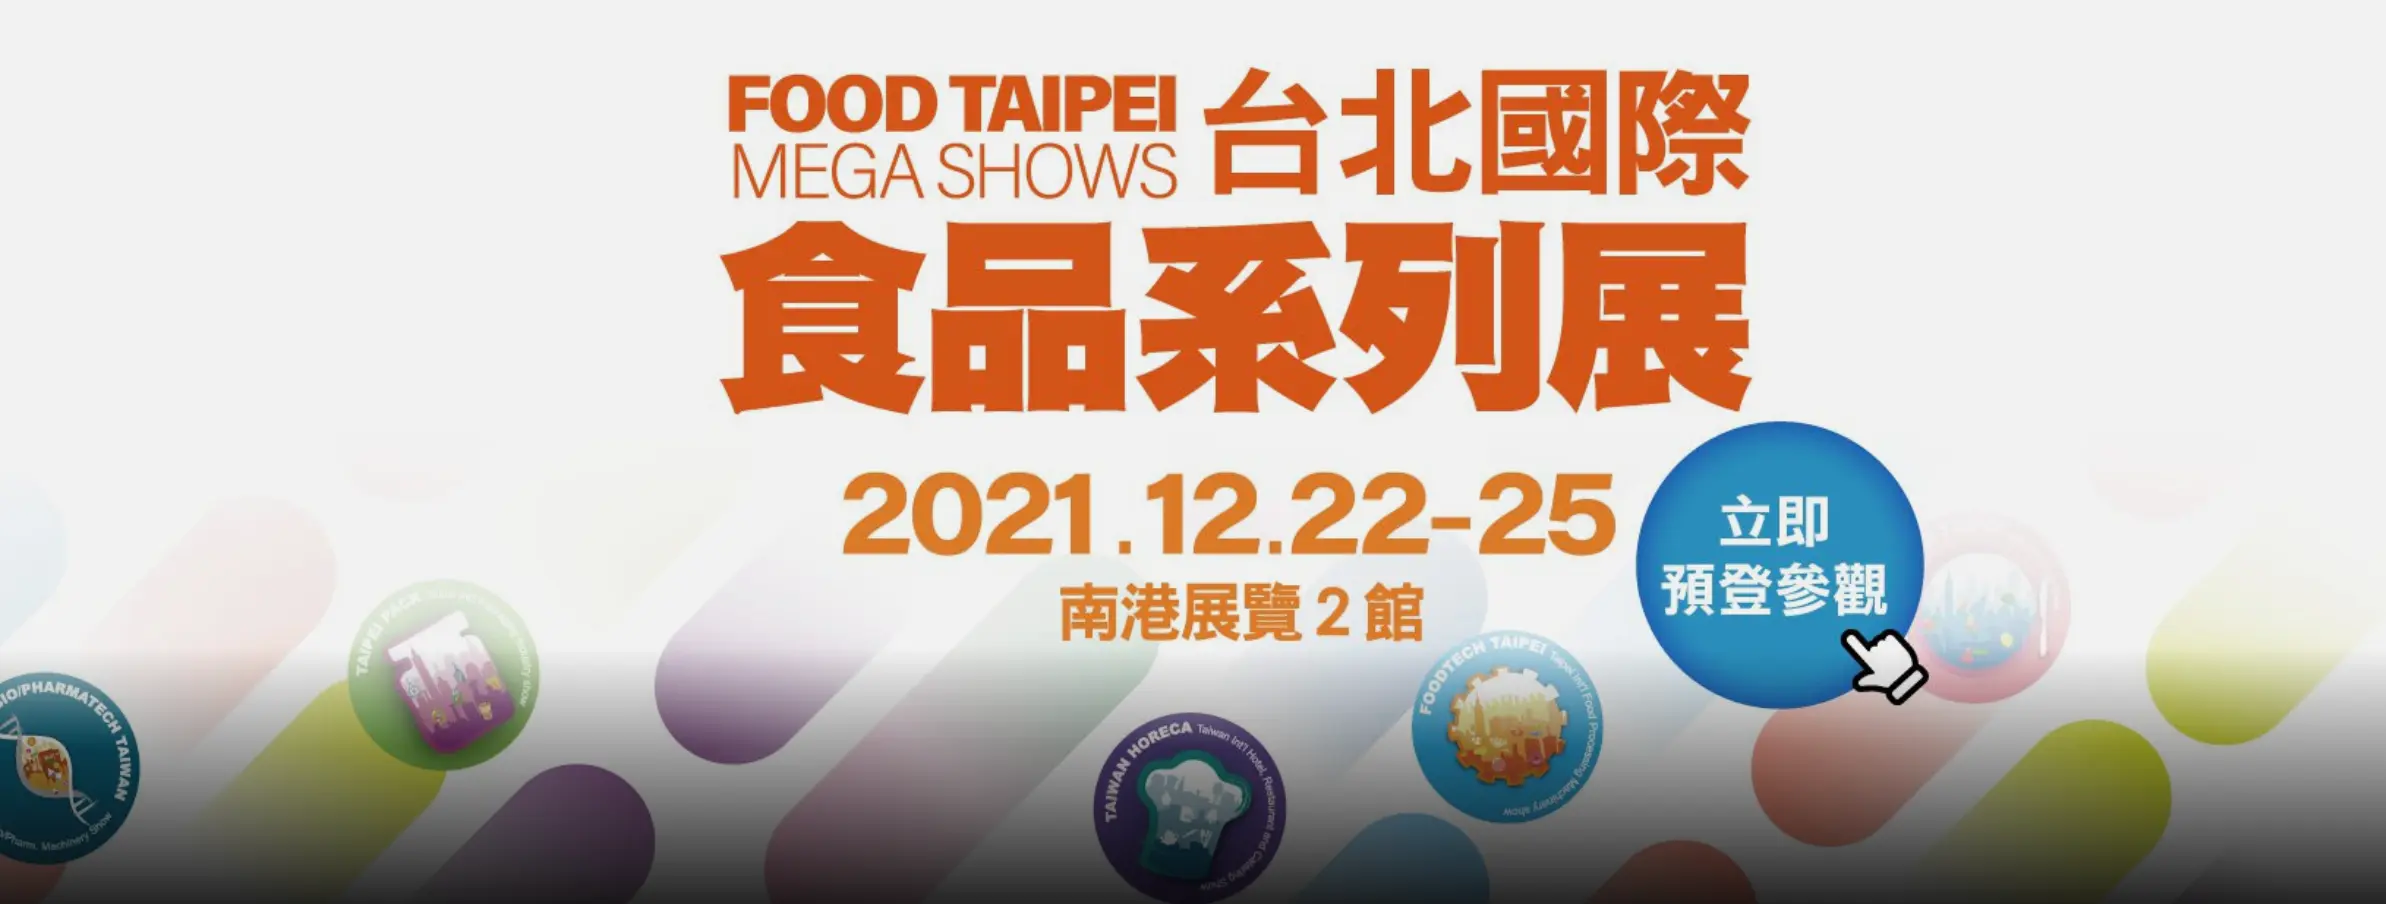 2021台北國際食品展覽會FOOD TAIPEI